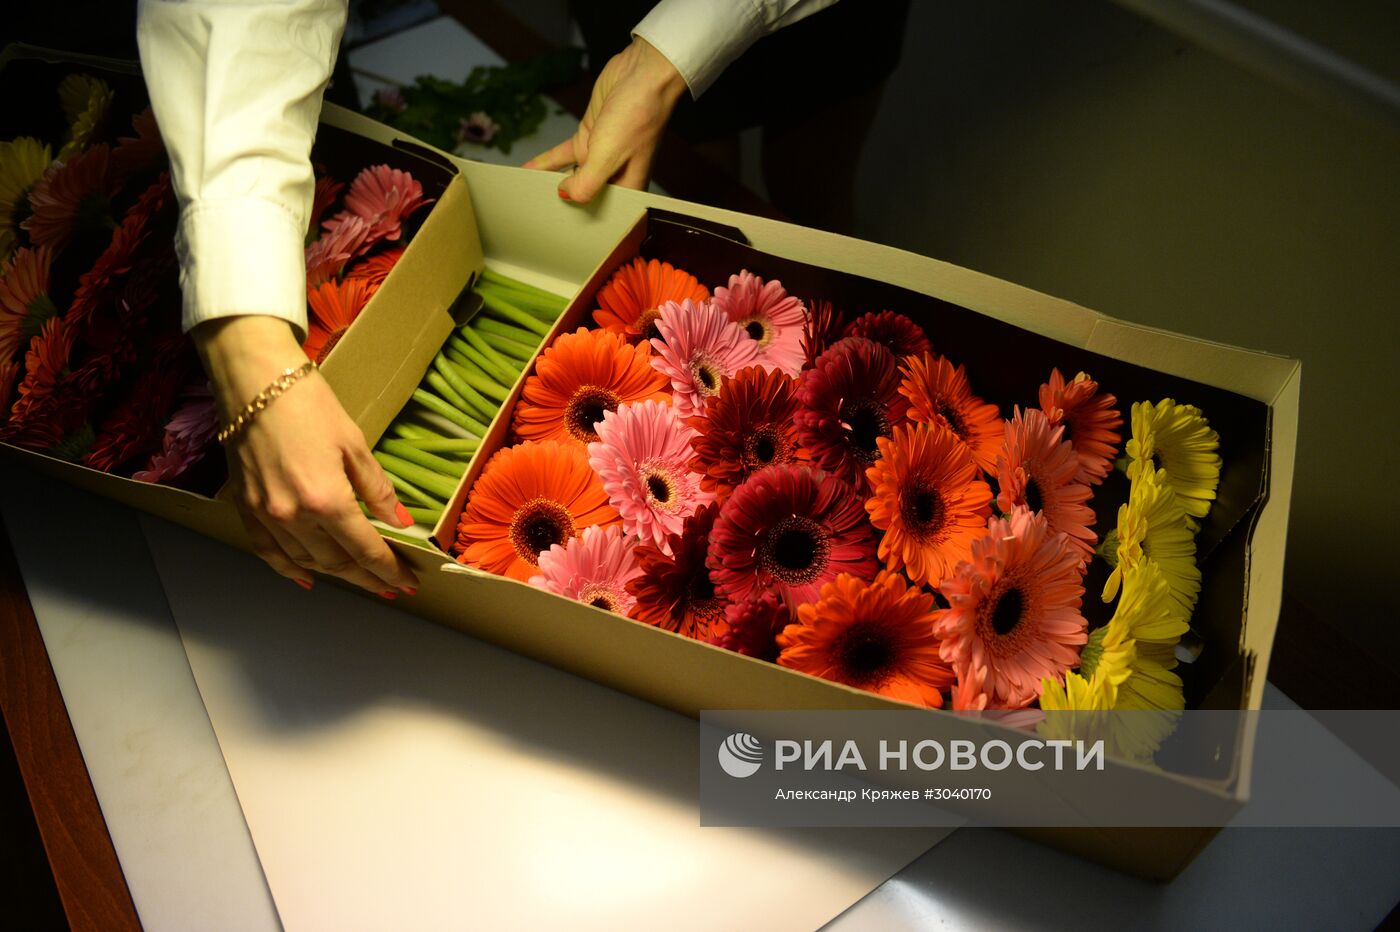 Доставка цветов из Голландии к 8 марта